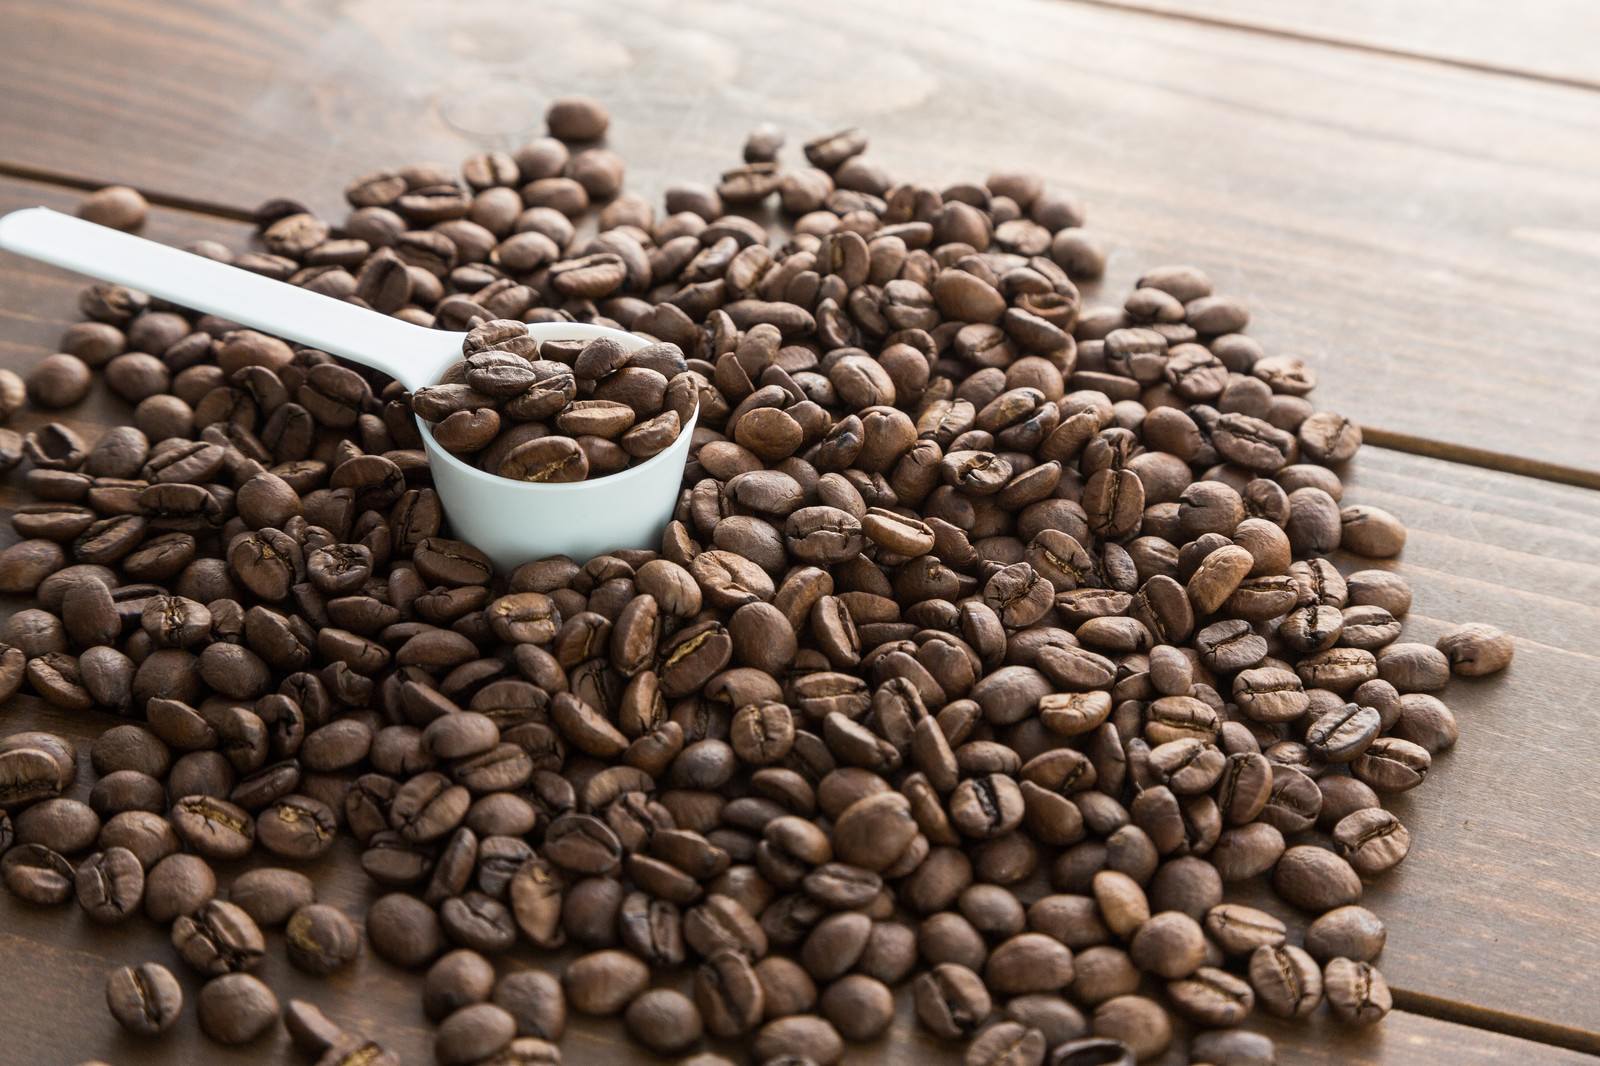 「計量スプーンとコーヒー豆」の写真